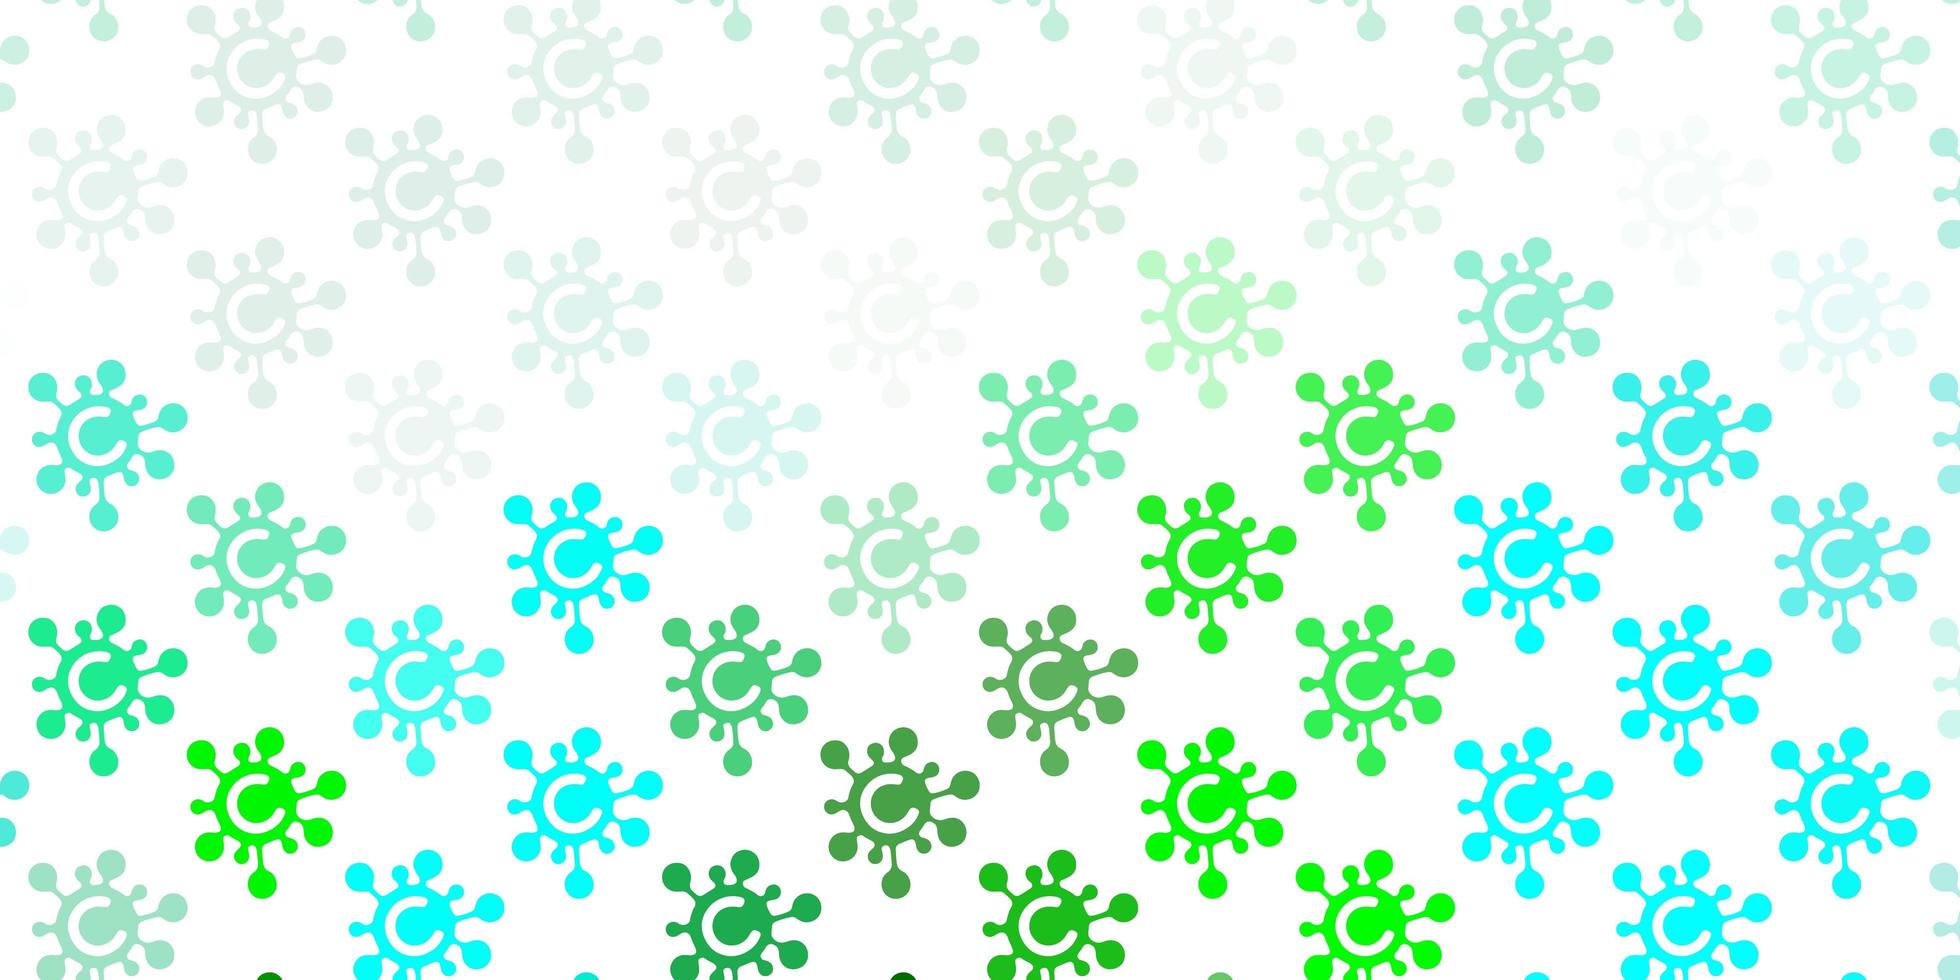 ljusblå, grön vektorstruktur med sjukdomssymboler. vektor